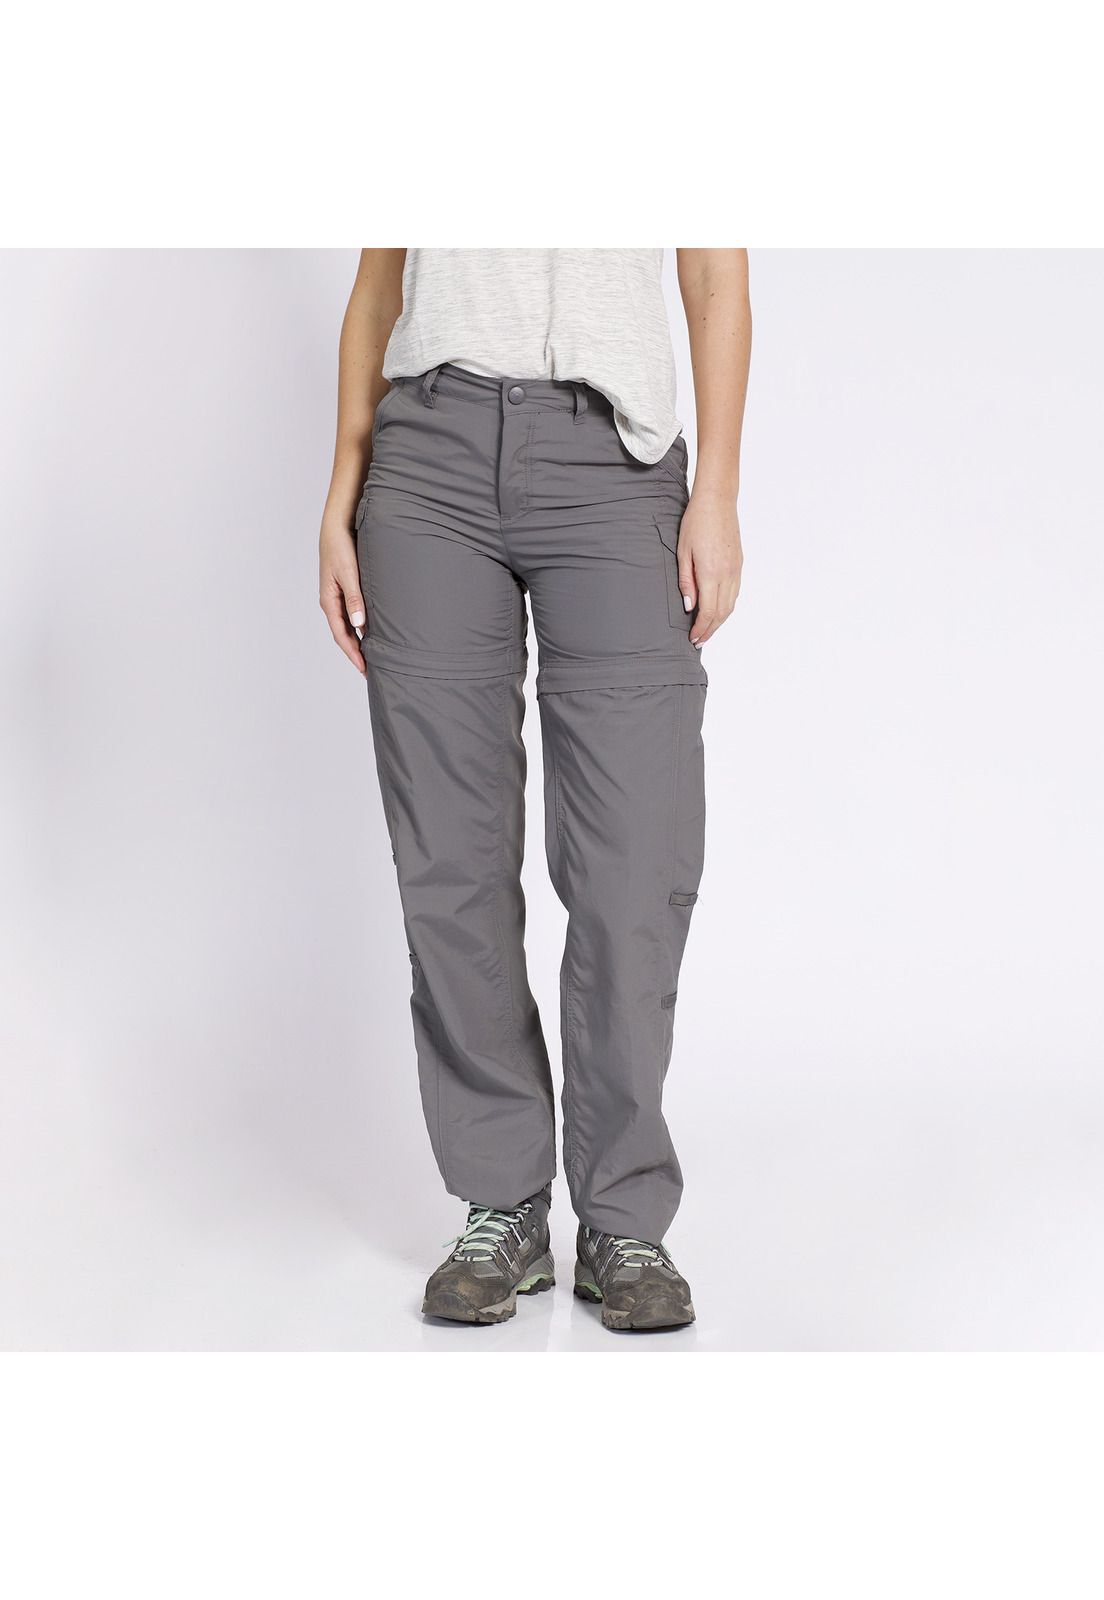 Pantalón Desmontable Mujer - Calzas y Pantalones